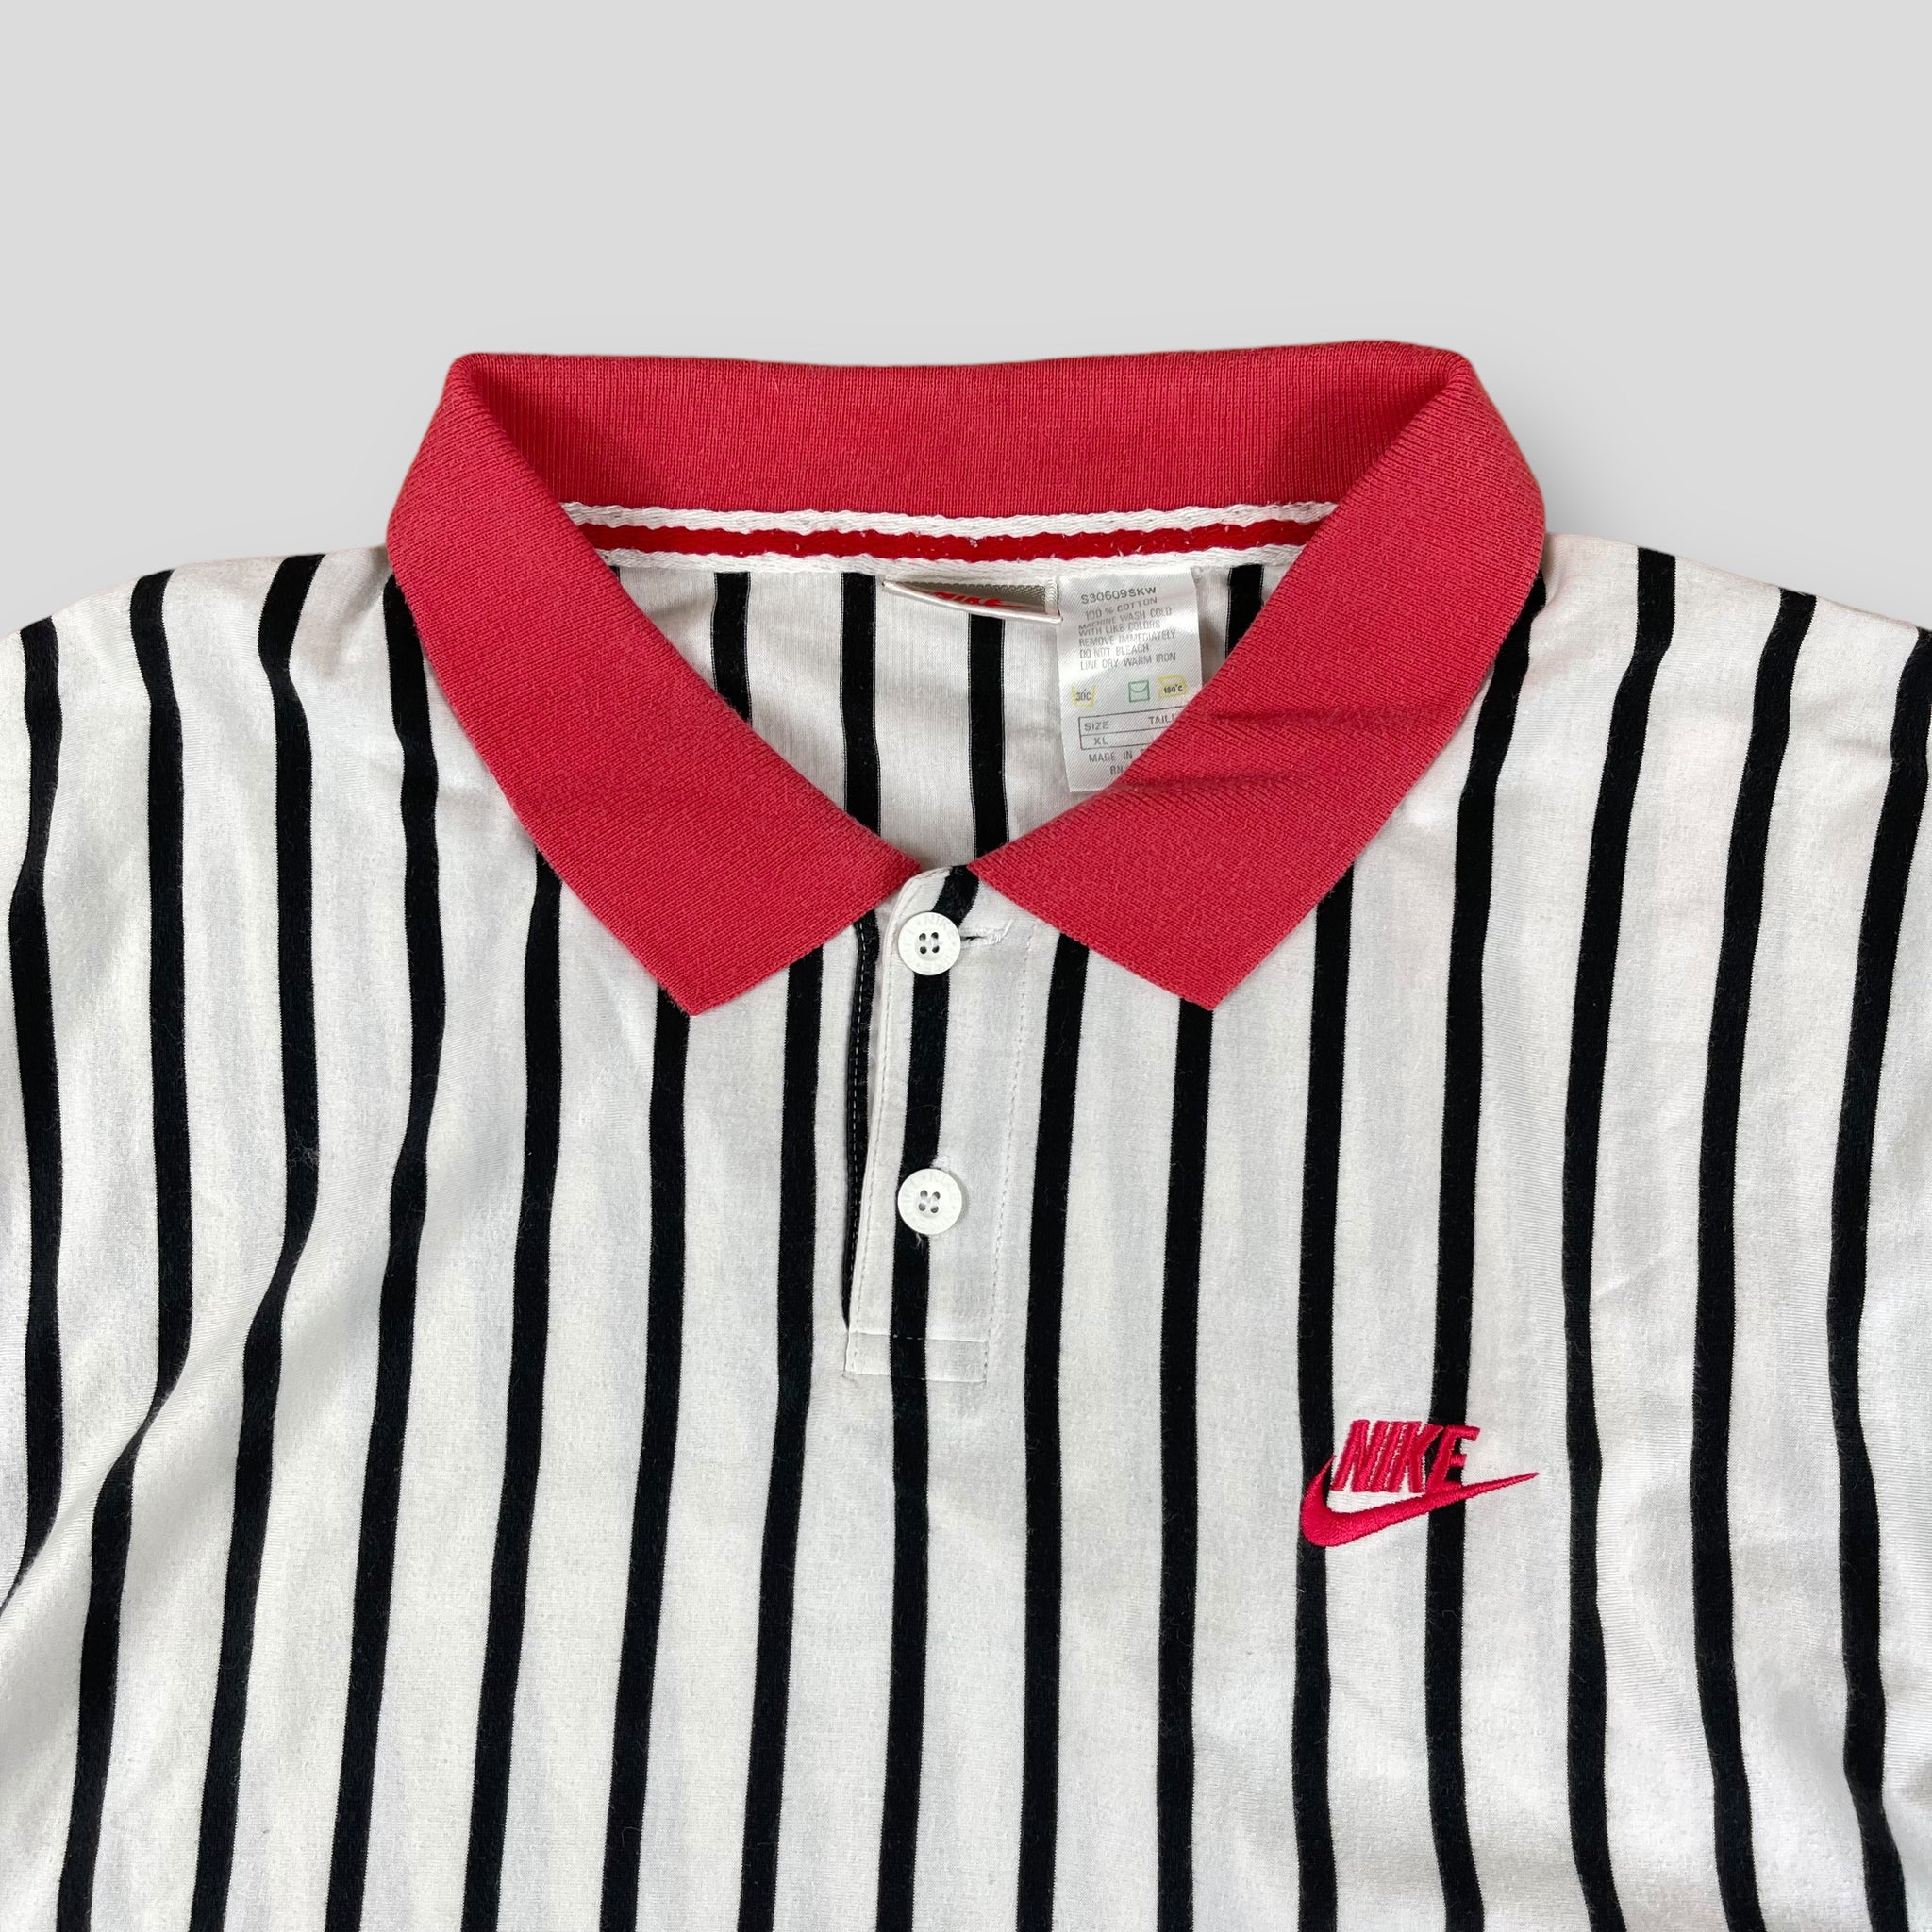 Nike striped polo